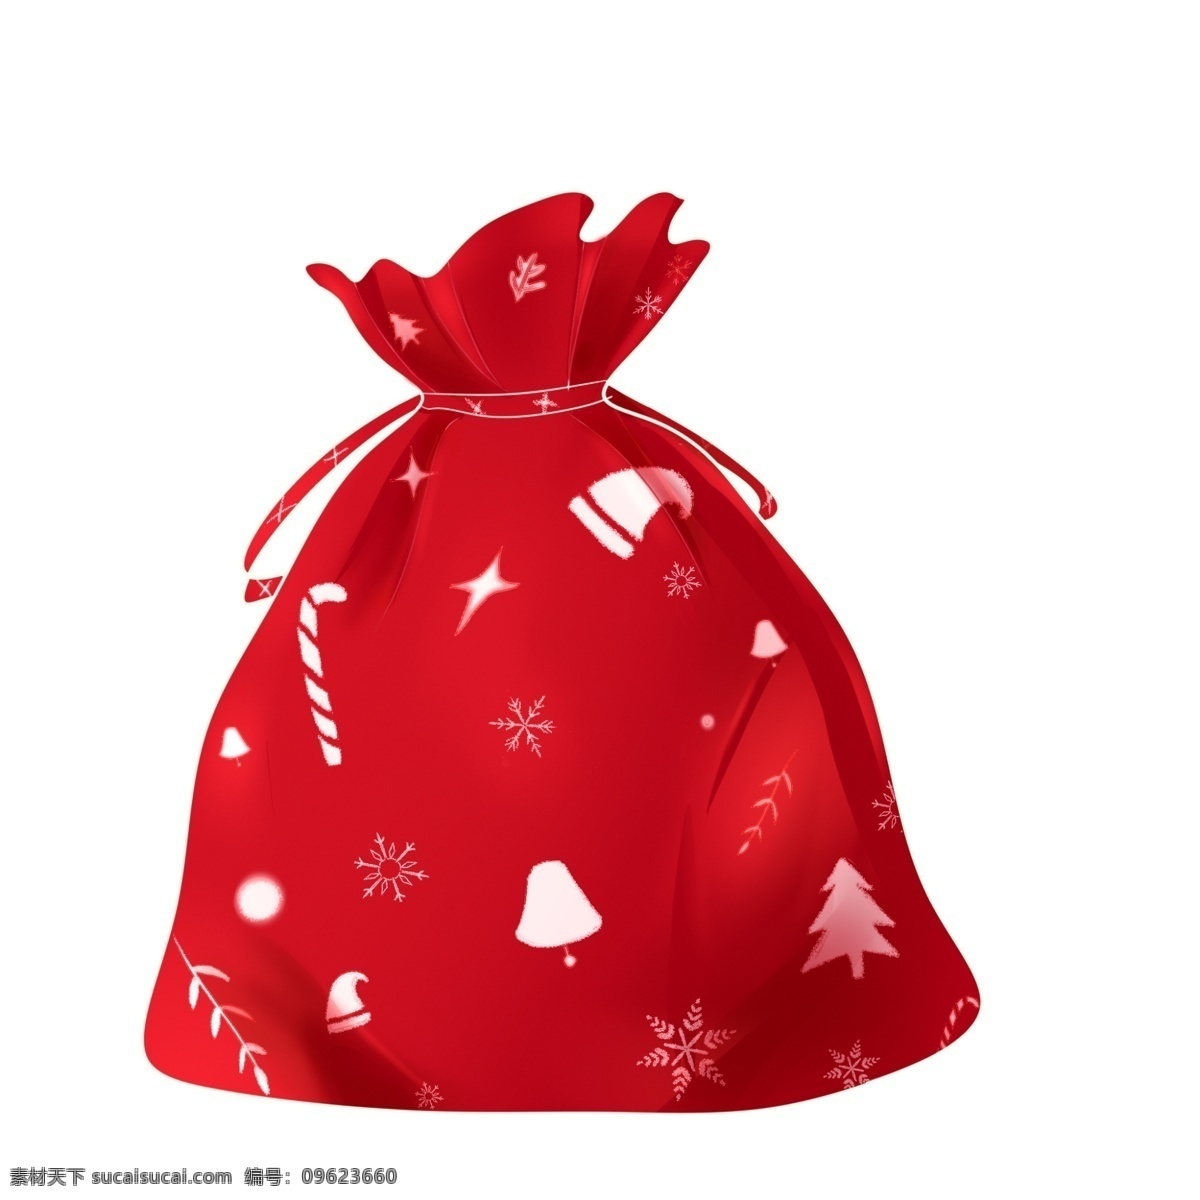 圣诞节 礼物 袋 元素 礼物袋 装饰 红色 雪花 圣诞帽 拐杖糖 红色礼物袋 圣诞树